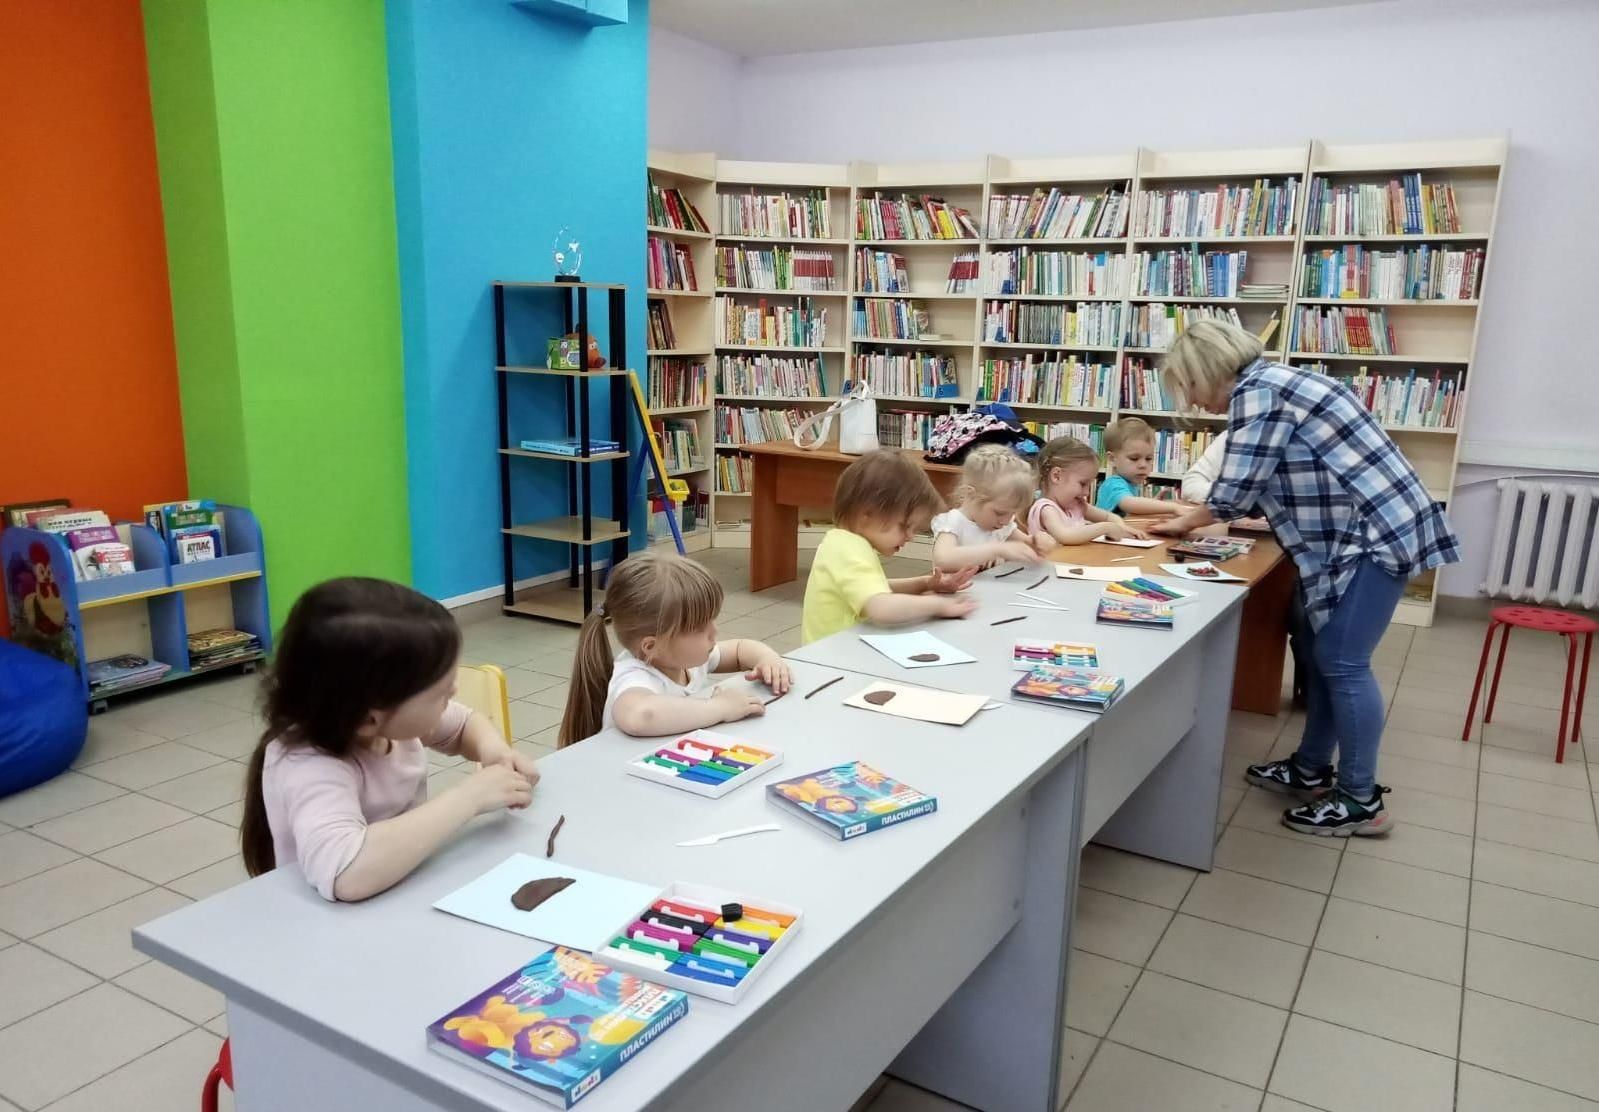 Библиотека 32 2. Библиотечный мастер класс. Детская библиотека Зеленоград. Библиотека Зеленоградск. Мастер класс на улице в библиотеке.